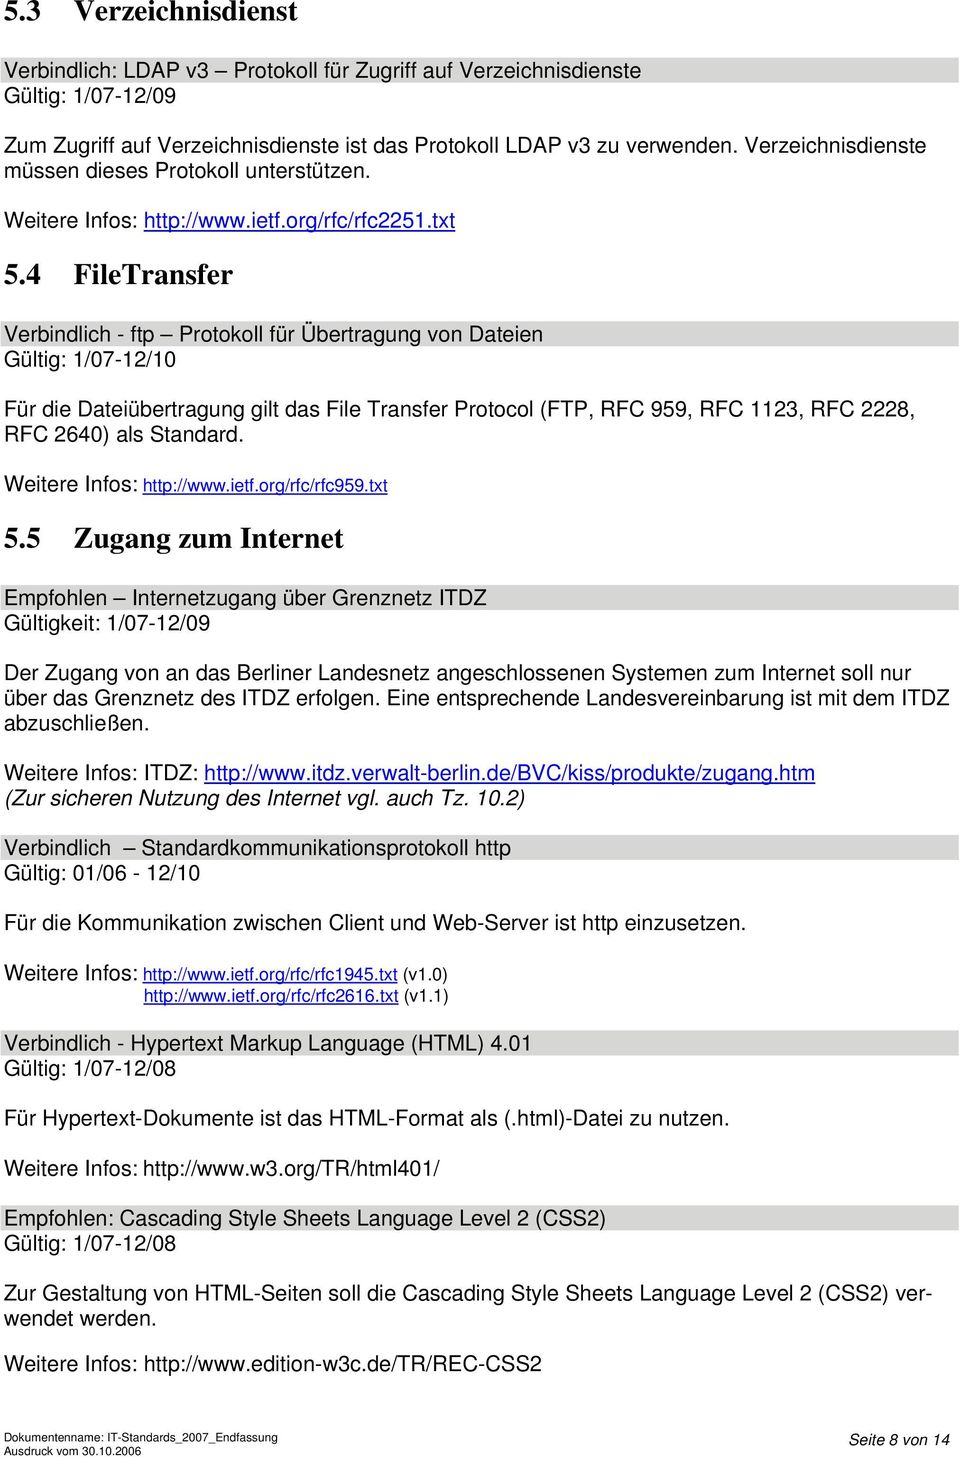 4 FileTransfer Verbindlich - ftp Protokoll für Übertragung von Dateien Gültig: 1/07-12/10 Für die Dateiübertragung gilt das File Transfer Protocol (FTP, RFC 959, RFC 1123, RFC 2228, RFC 2640) als